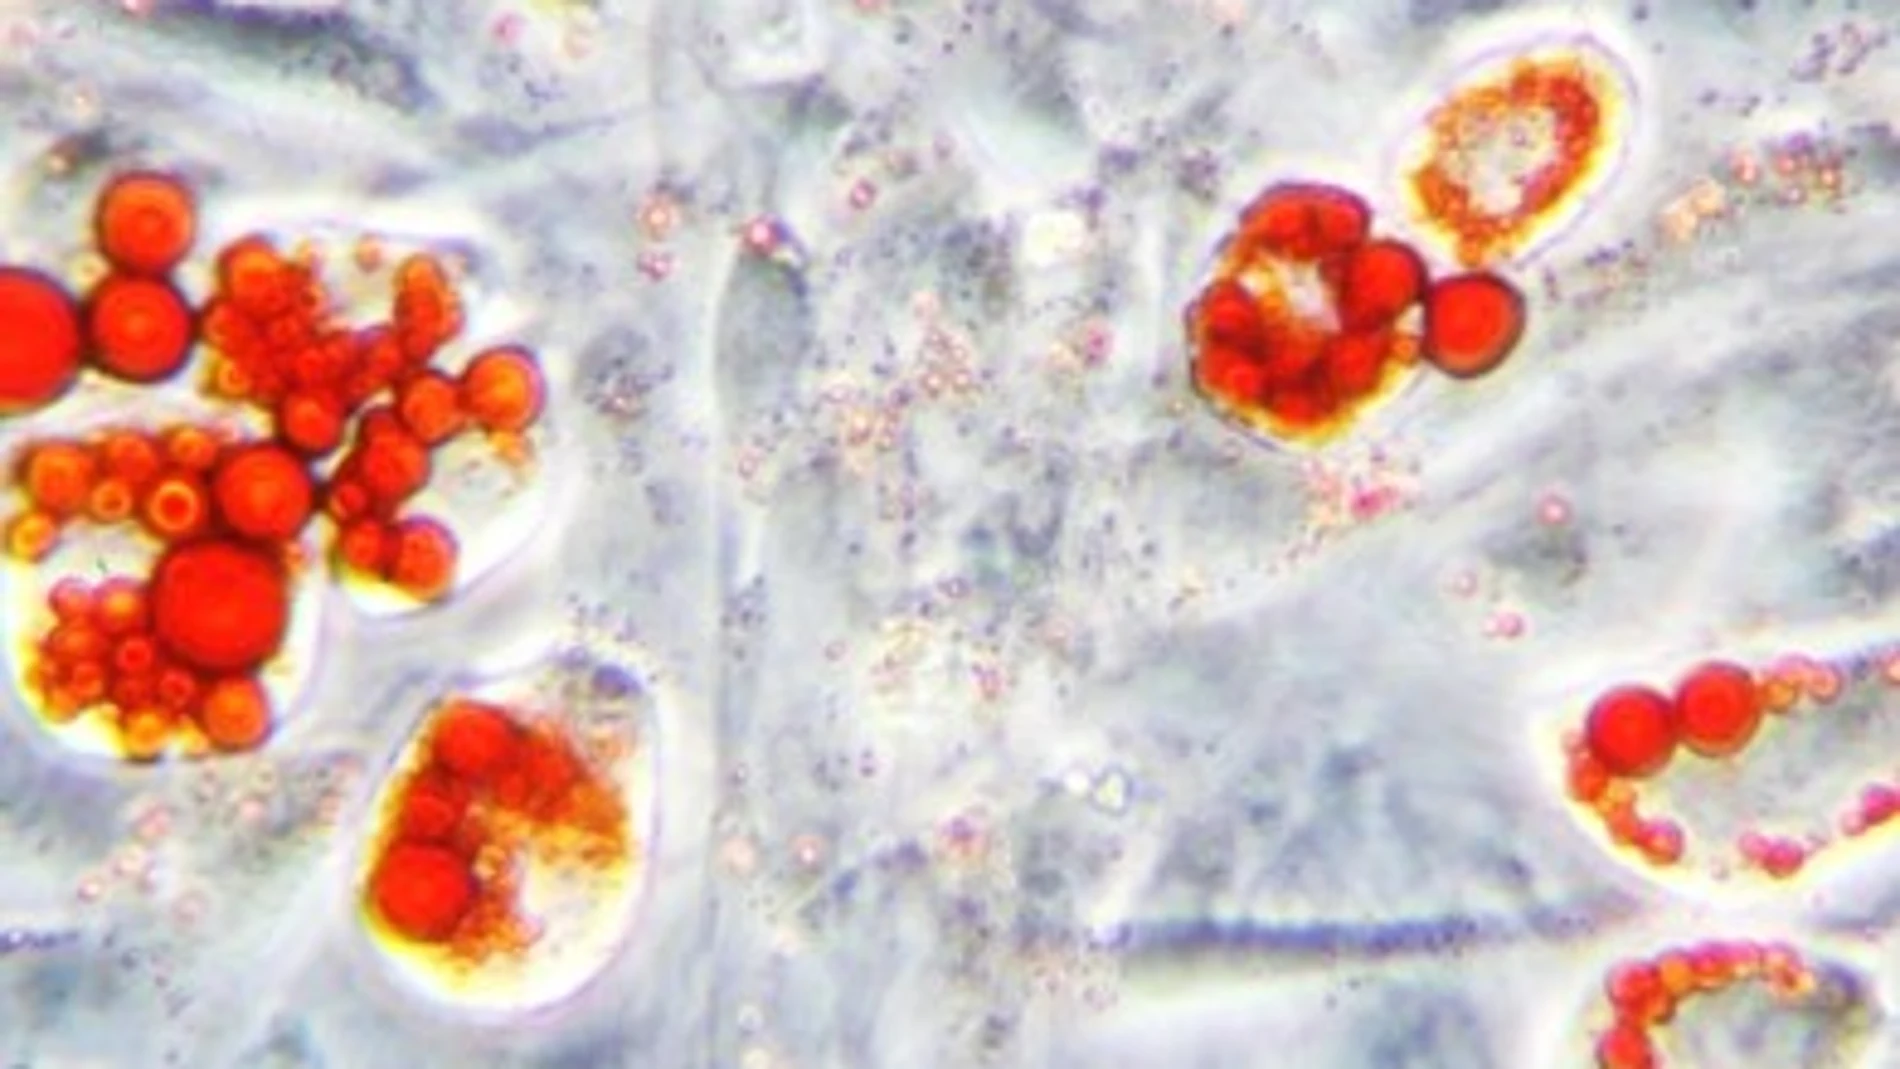 En células de tejido graso (adipocitos), los triglicéridos almacenados en las gotas lipídicas se tiñen con un colorante específico (Oil Red, color rojo)